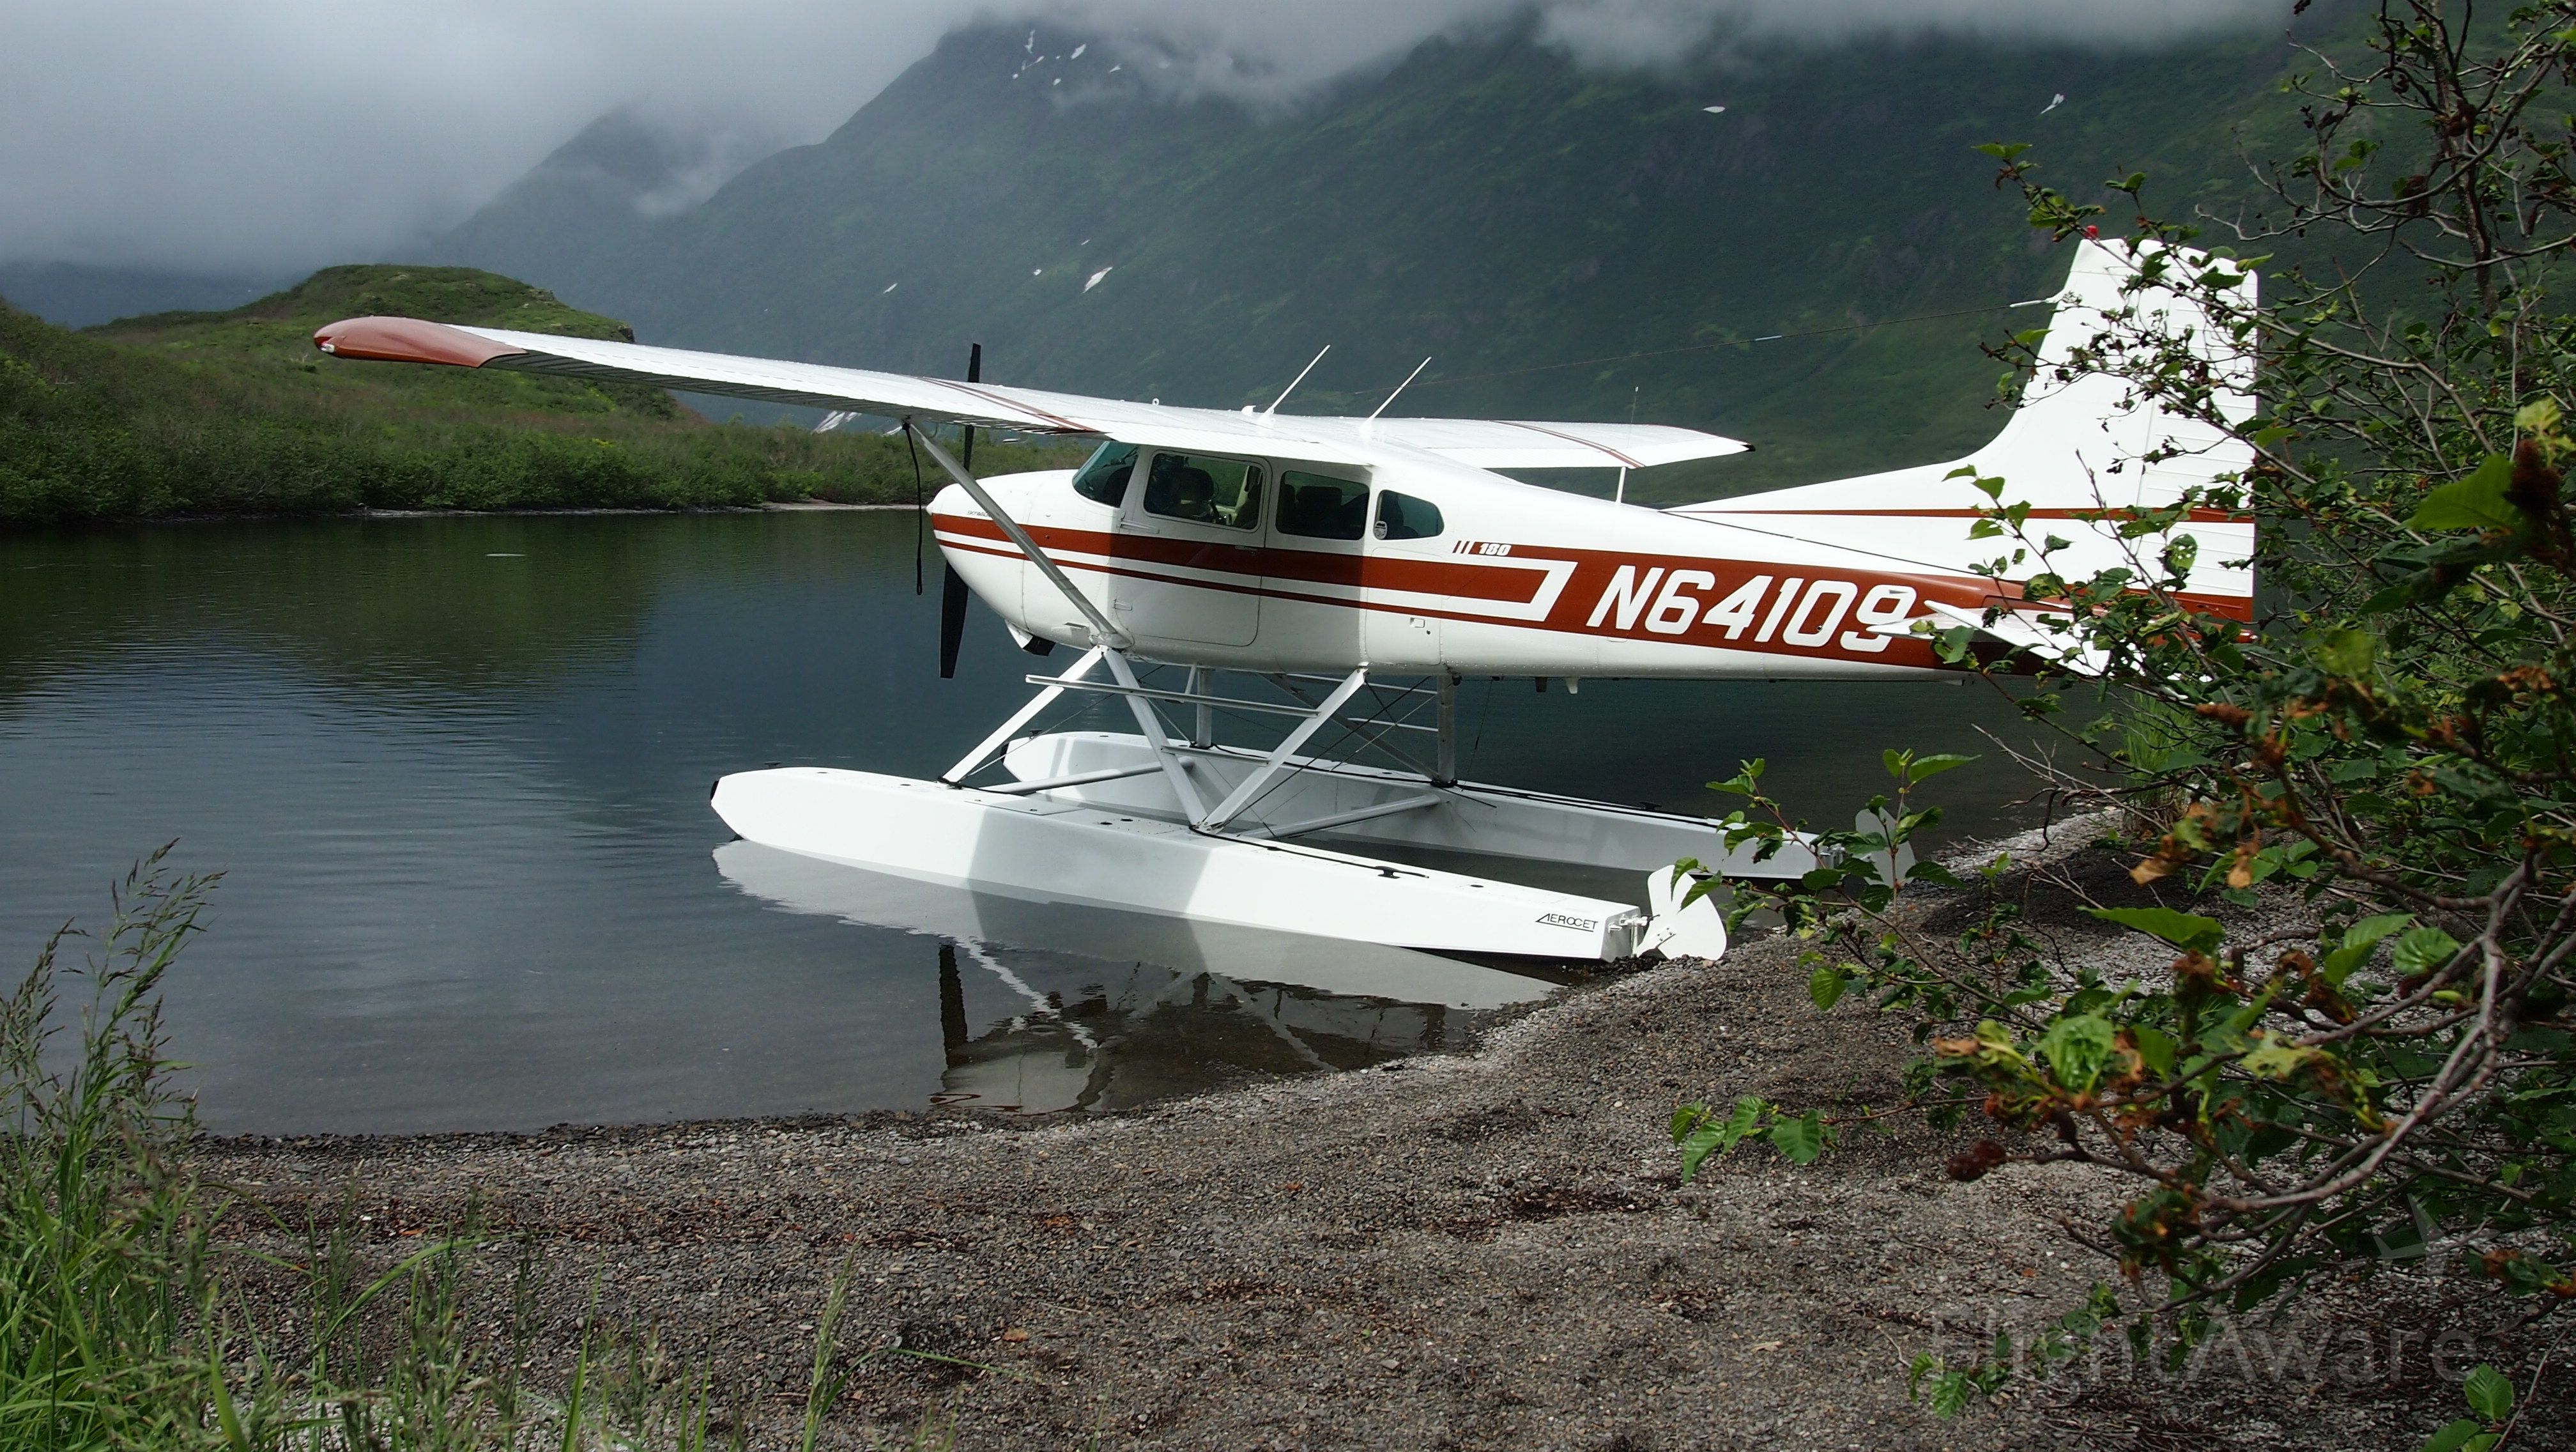 Cessna Skywagon 180 (N64109)